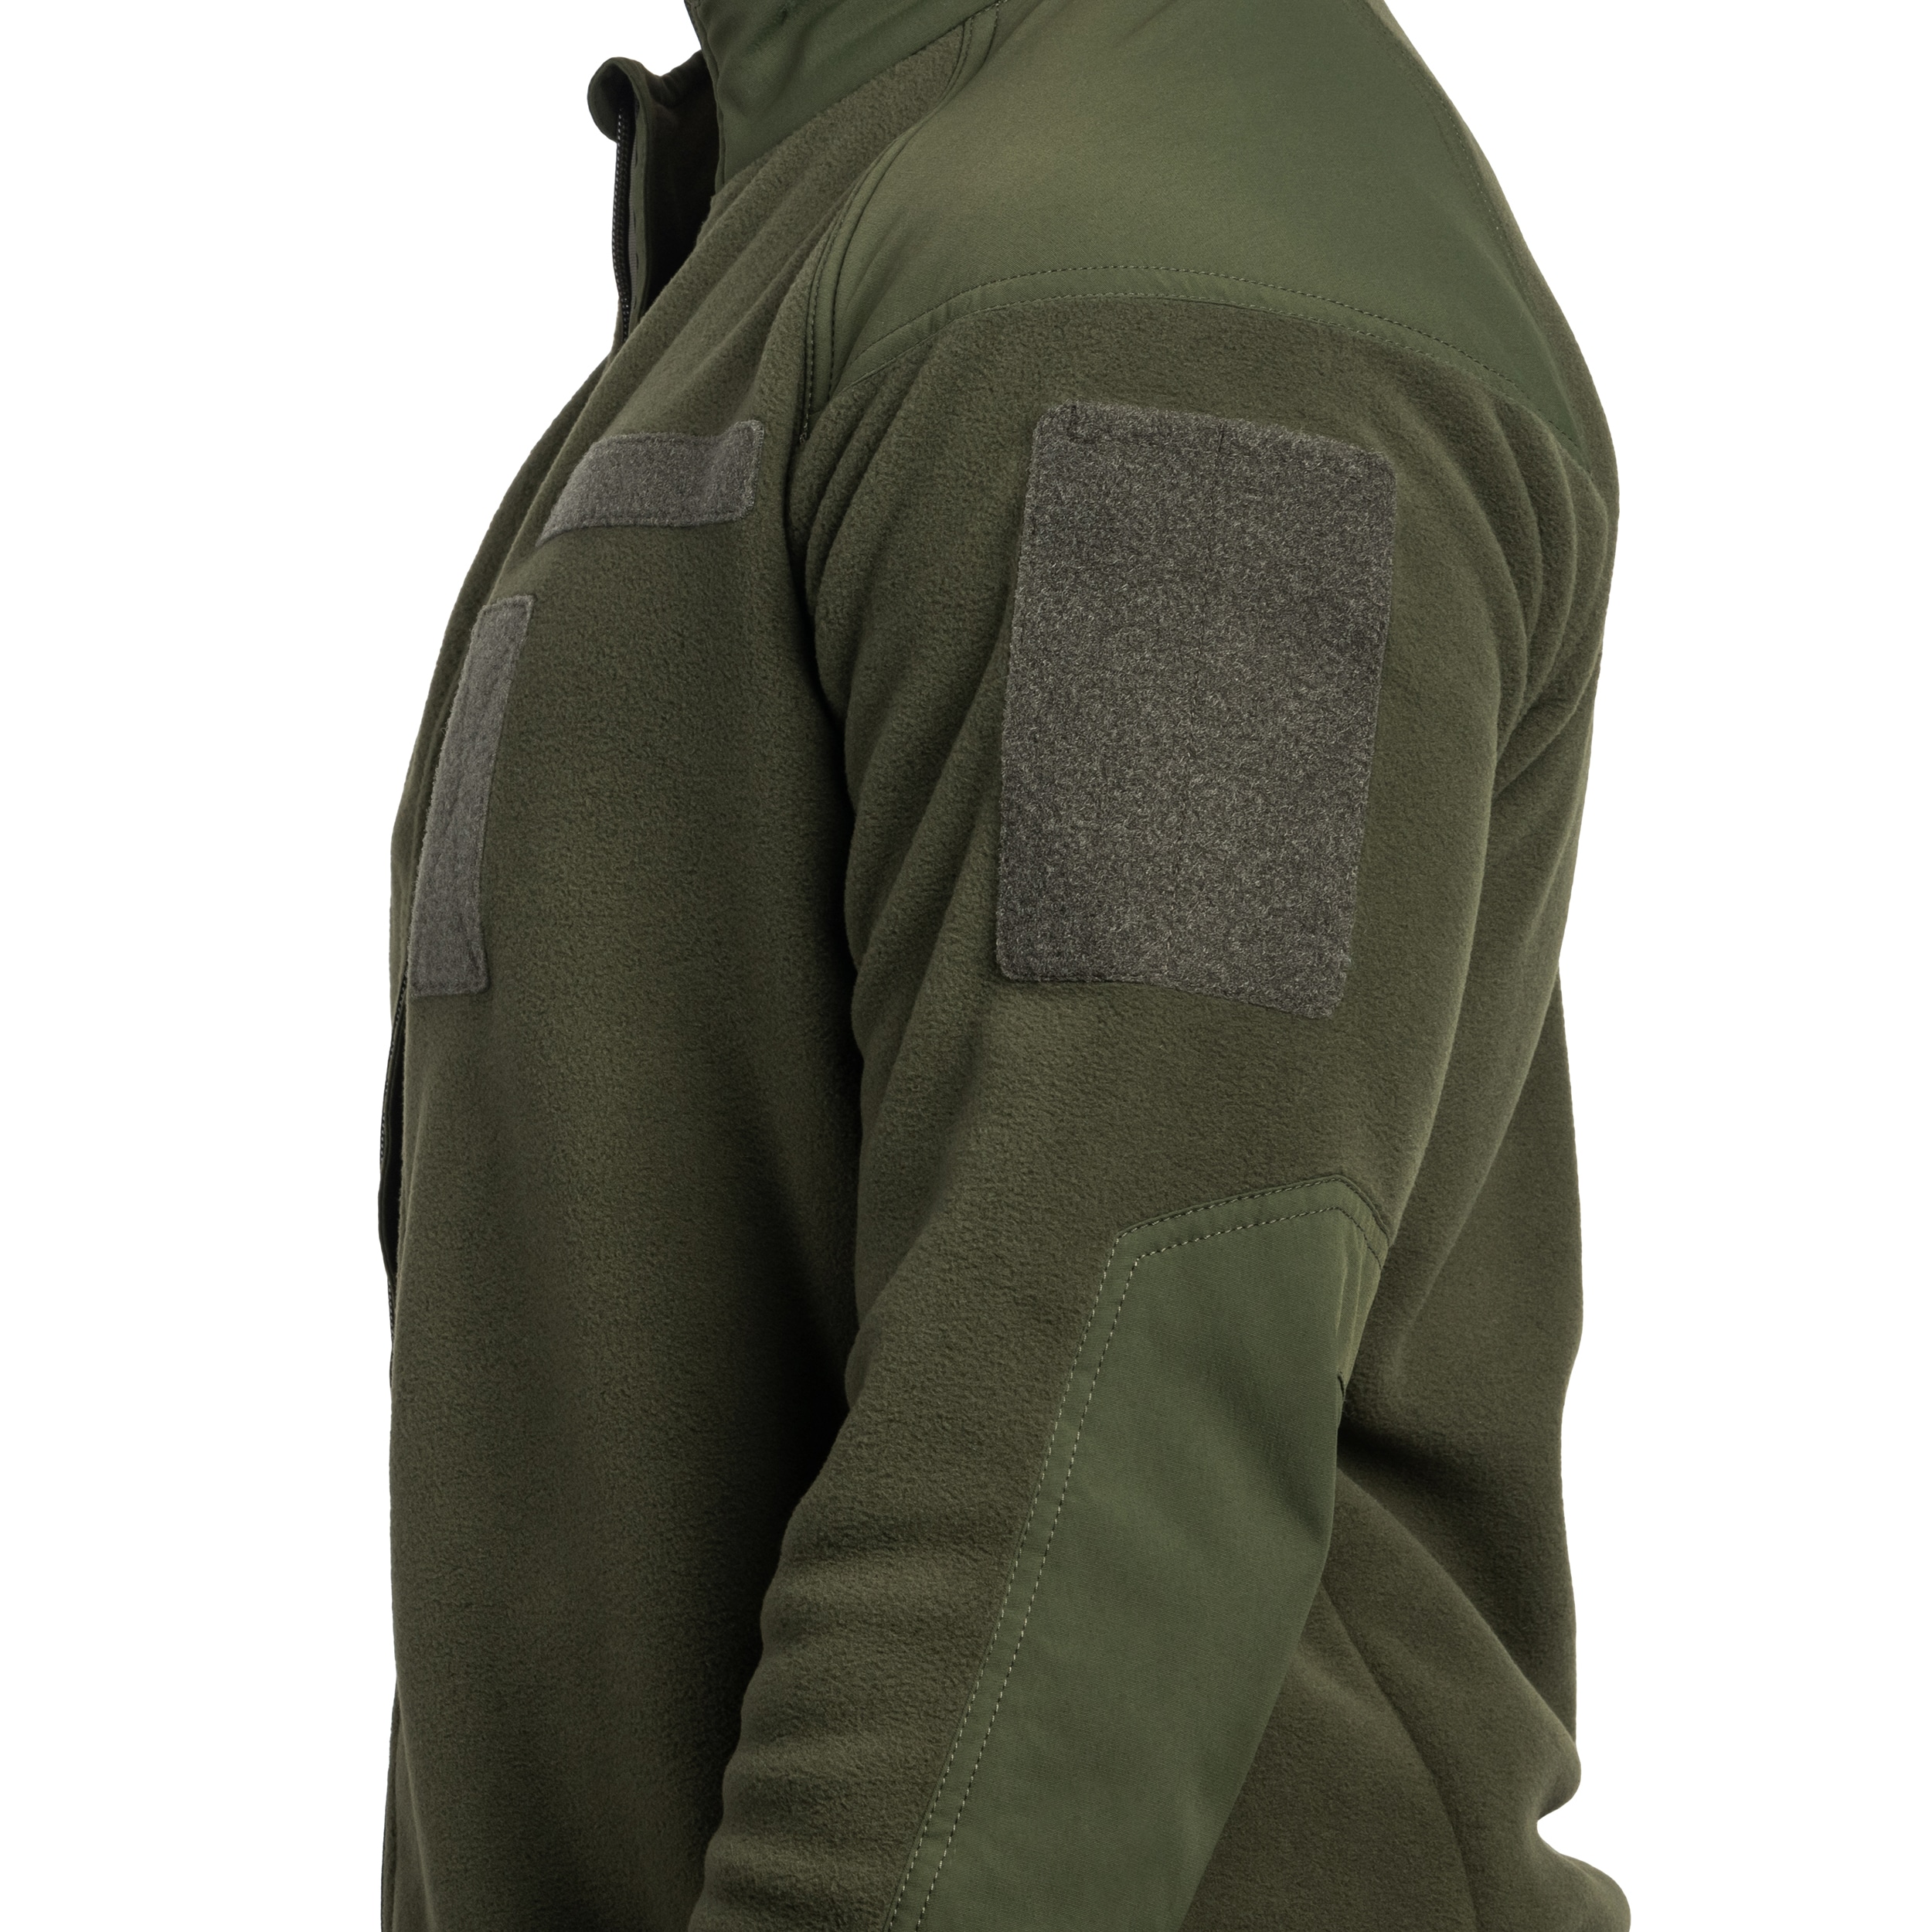 Polar M-Tac Combat Fleece Polartec Jacket - Army Olive